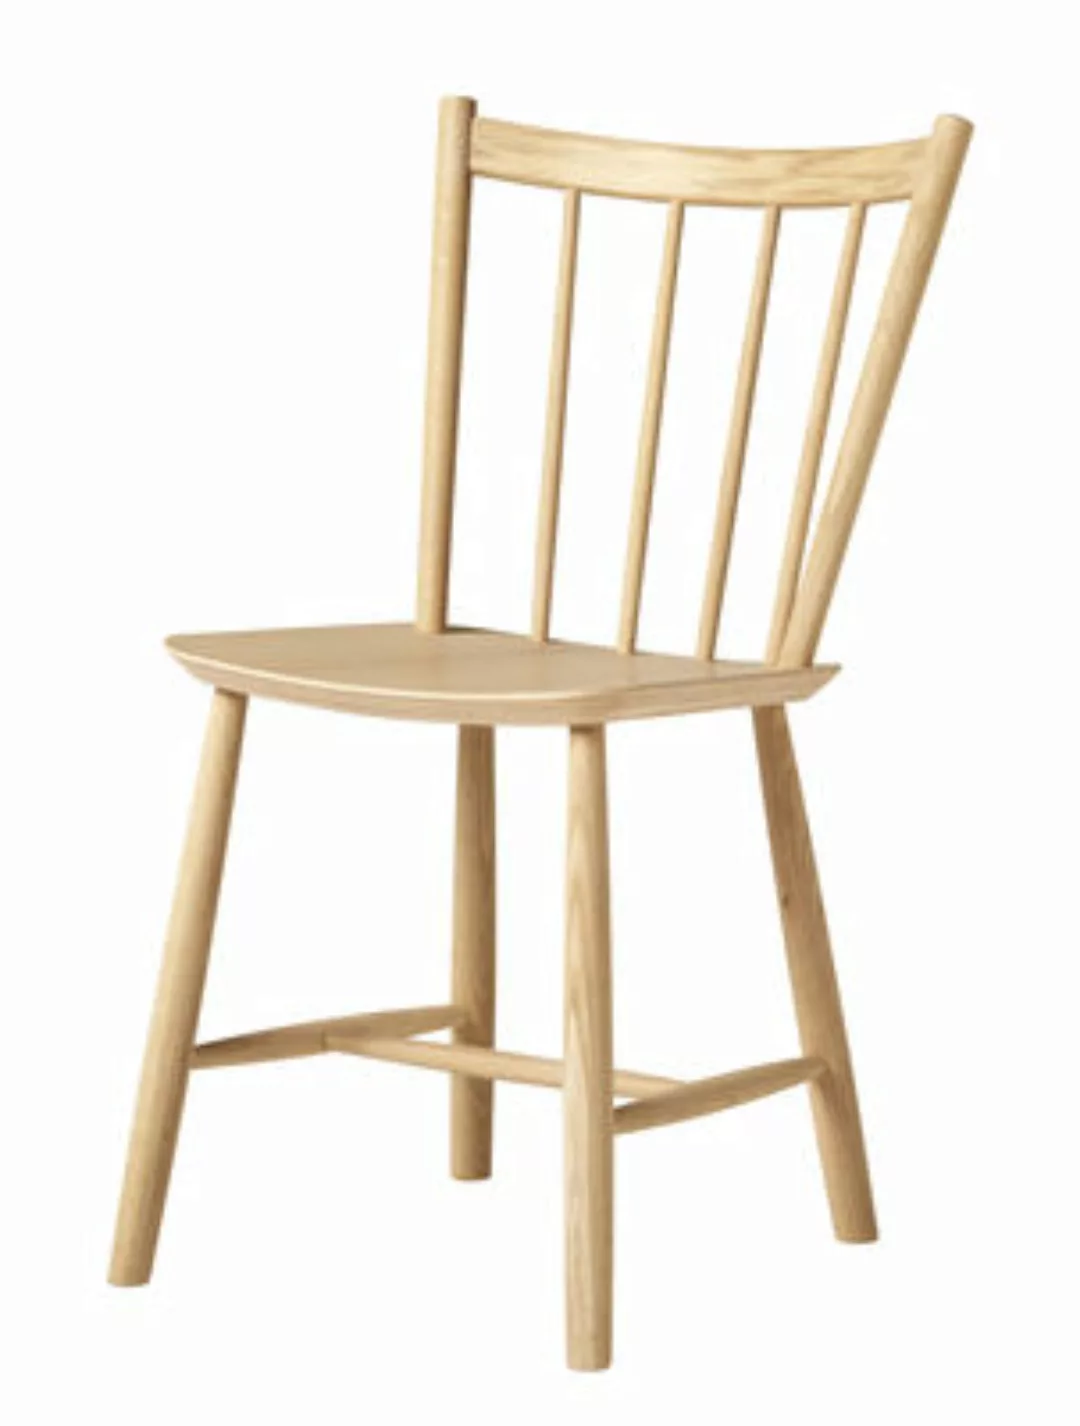 HAY - J41 Stuhl Eiche - eiche/lackiert wasserbasiert/BxHxT 46,5x82,5x48cm günstig online kaufen